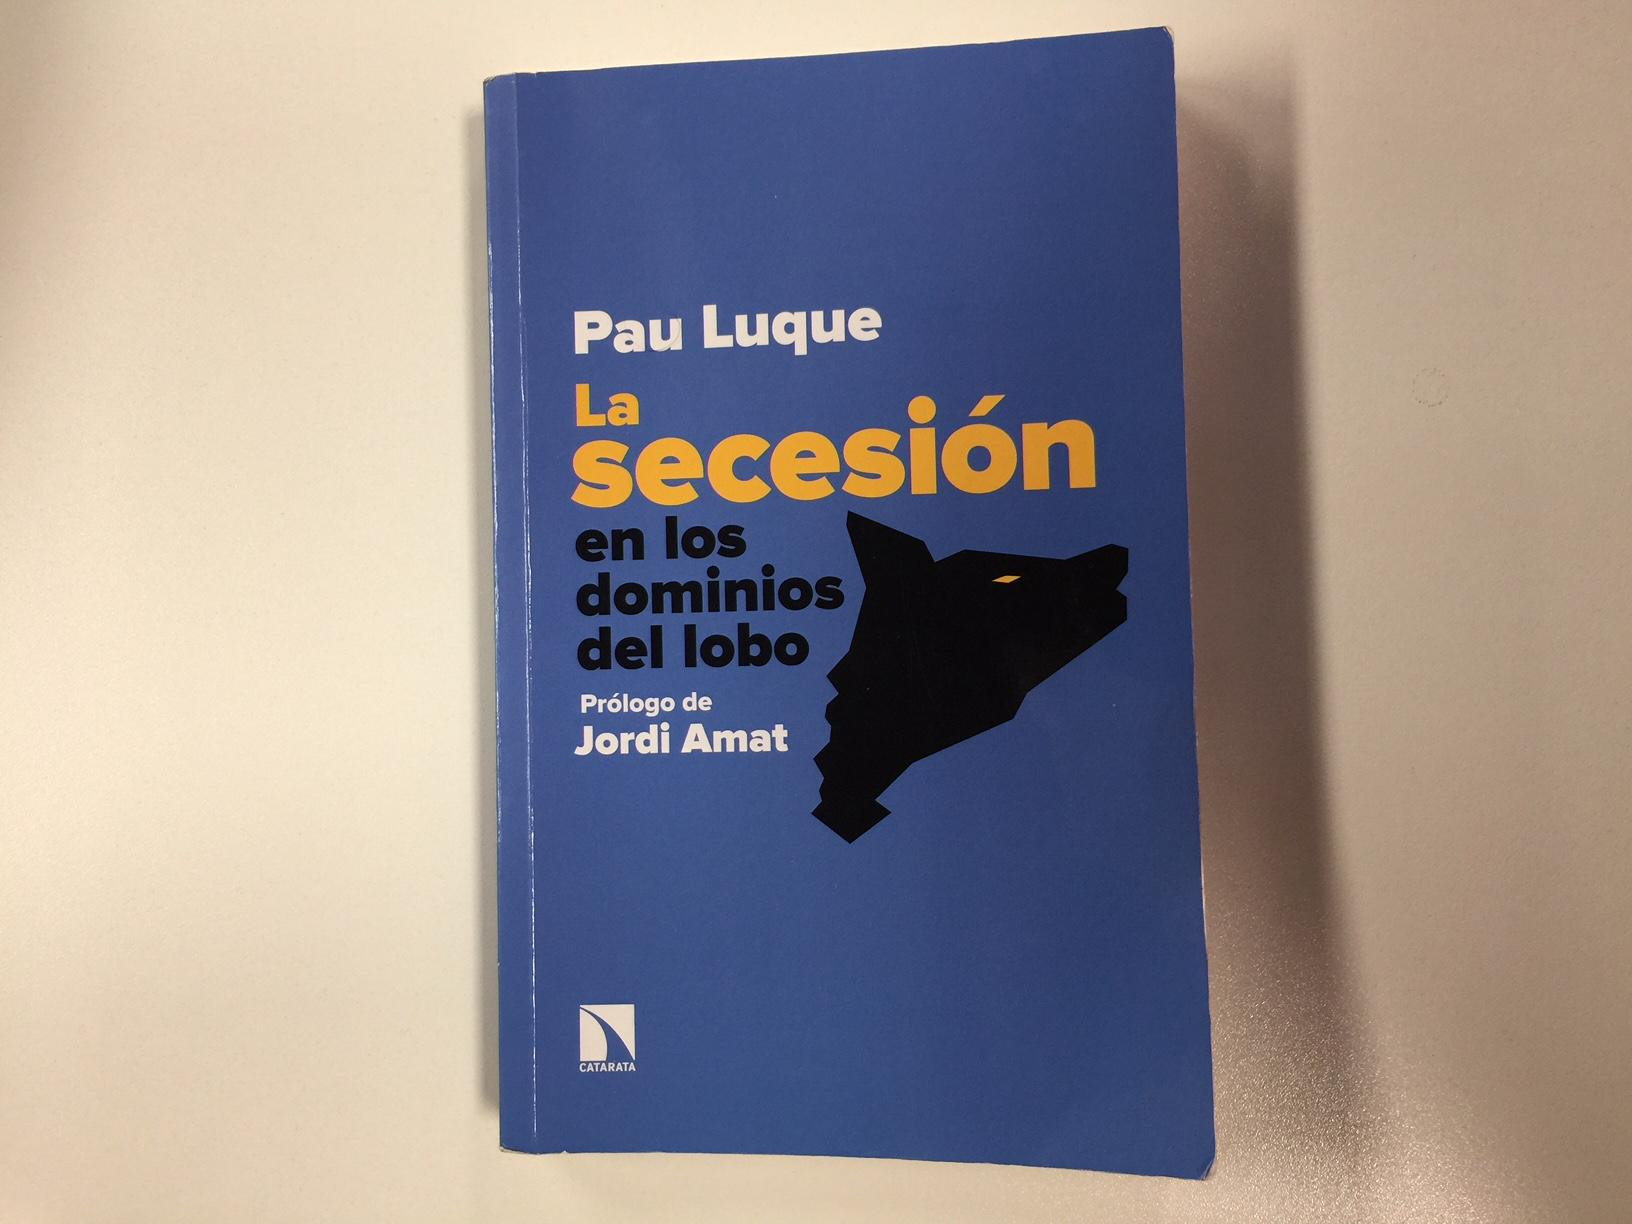 La secesión, en los dominios del lobo, el libro de Pau Luque